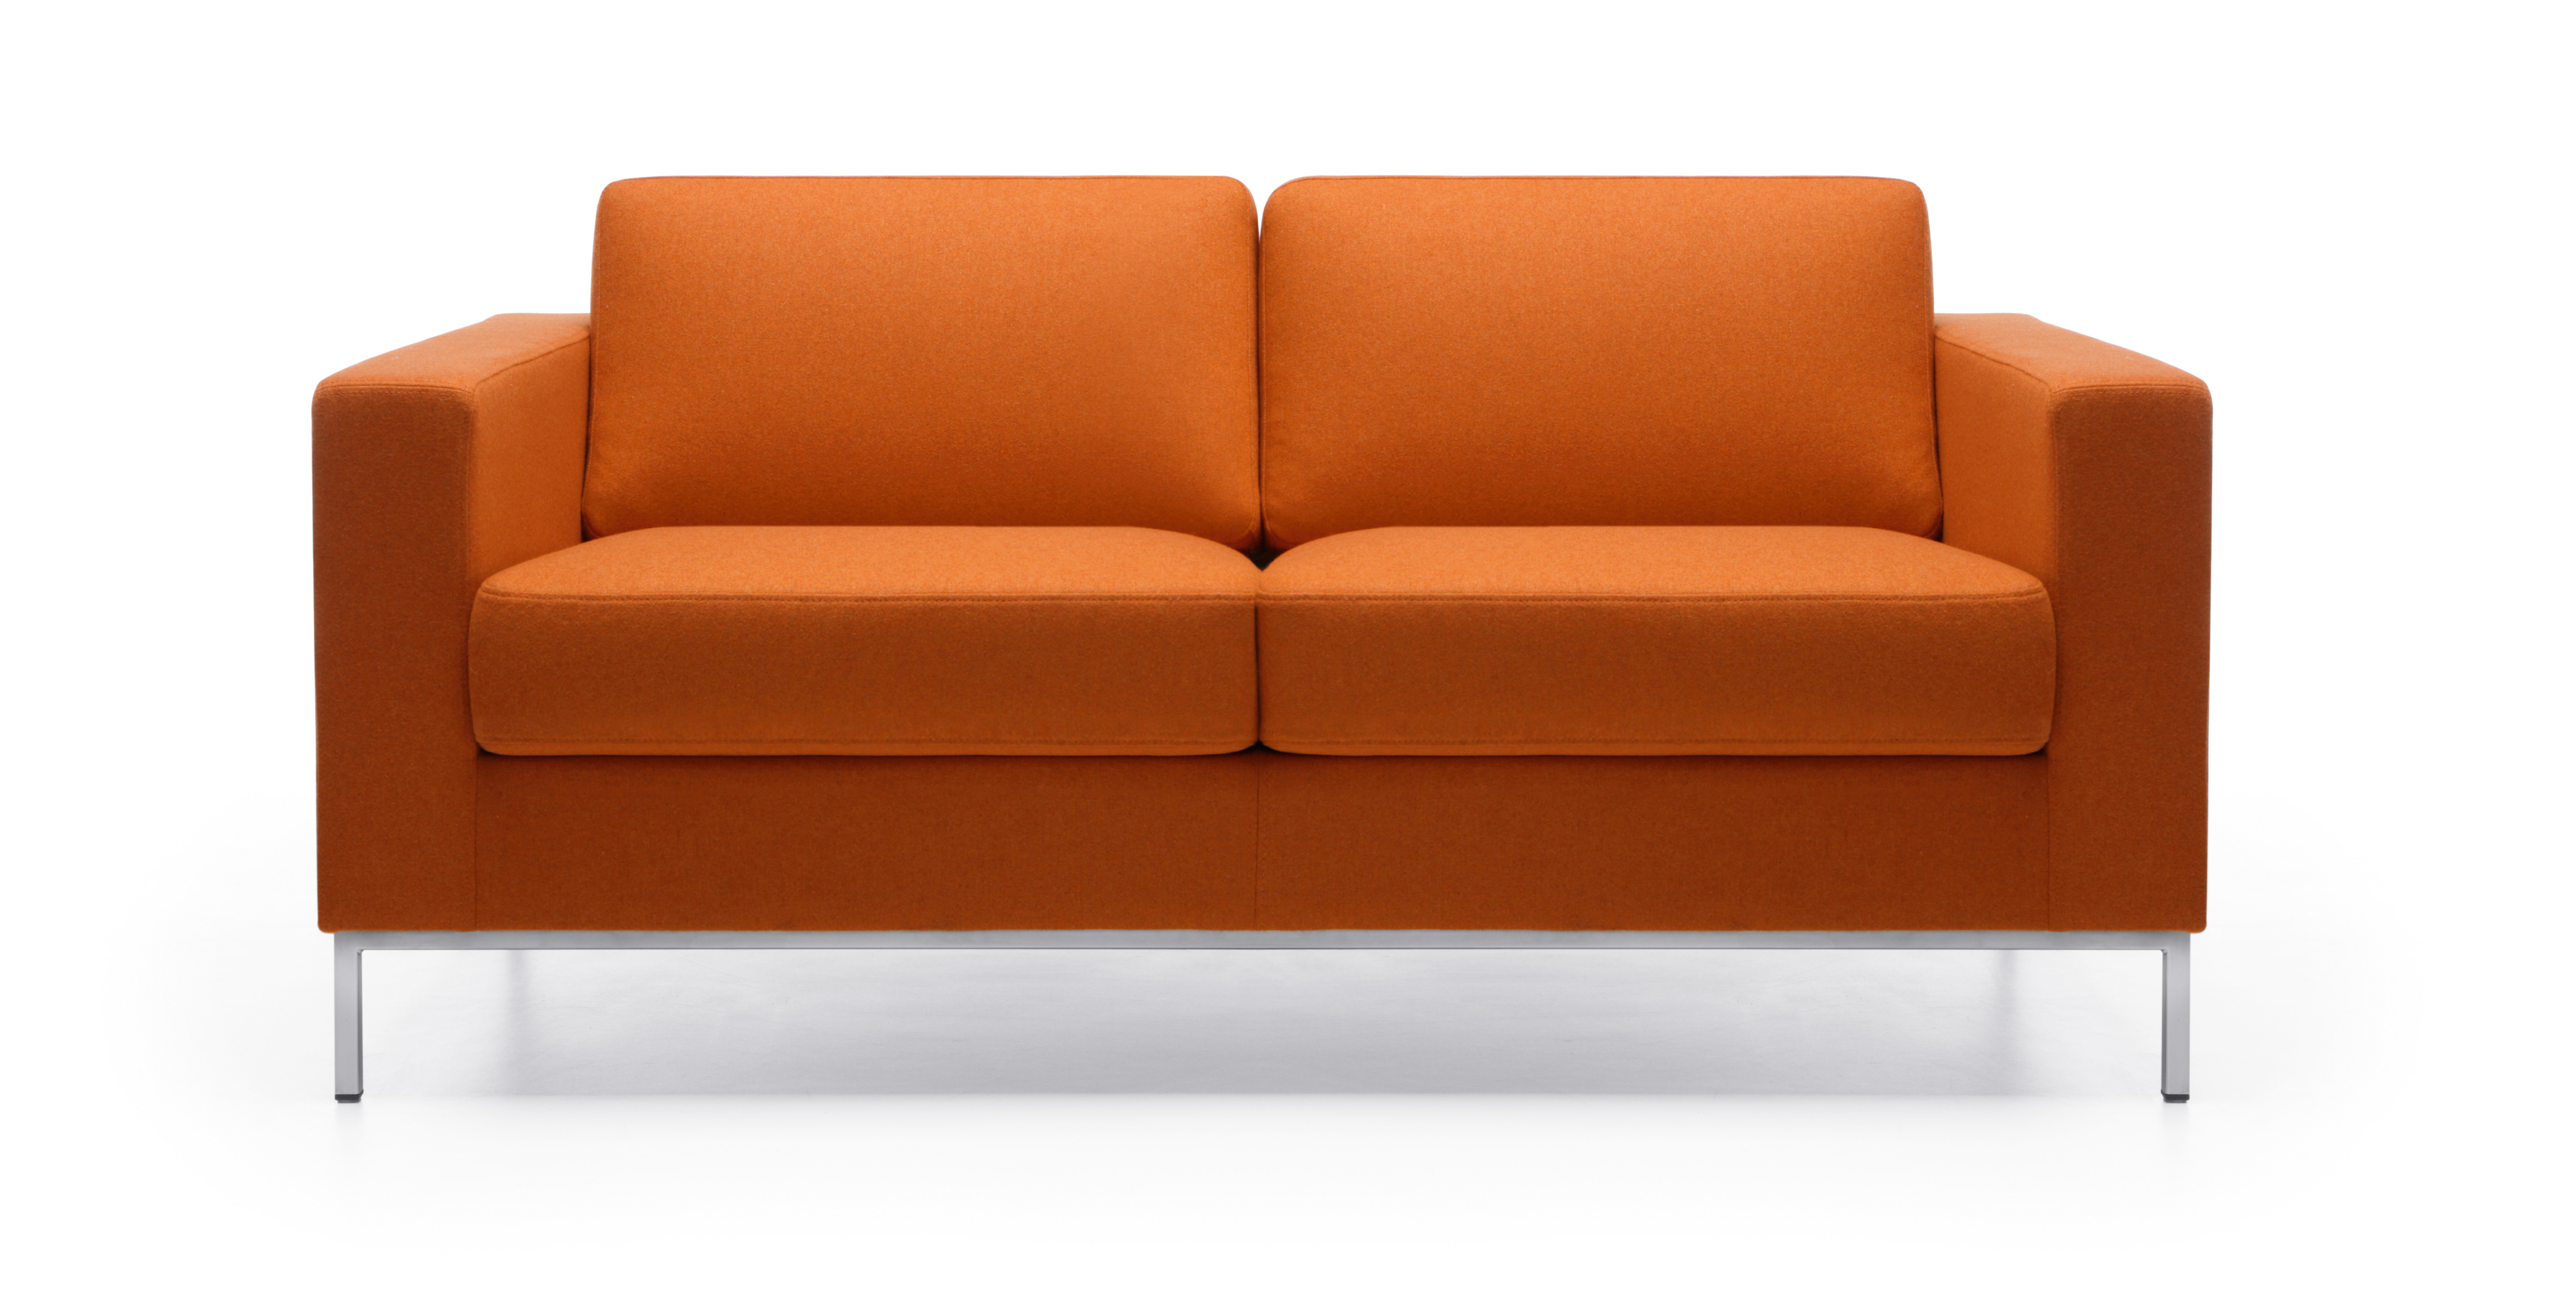 Мягкий двухместный. Оранжевый диван. Диван двухместный. Диван офисный оранжевый. Диван двухместный оранжевый.